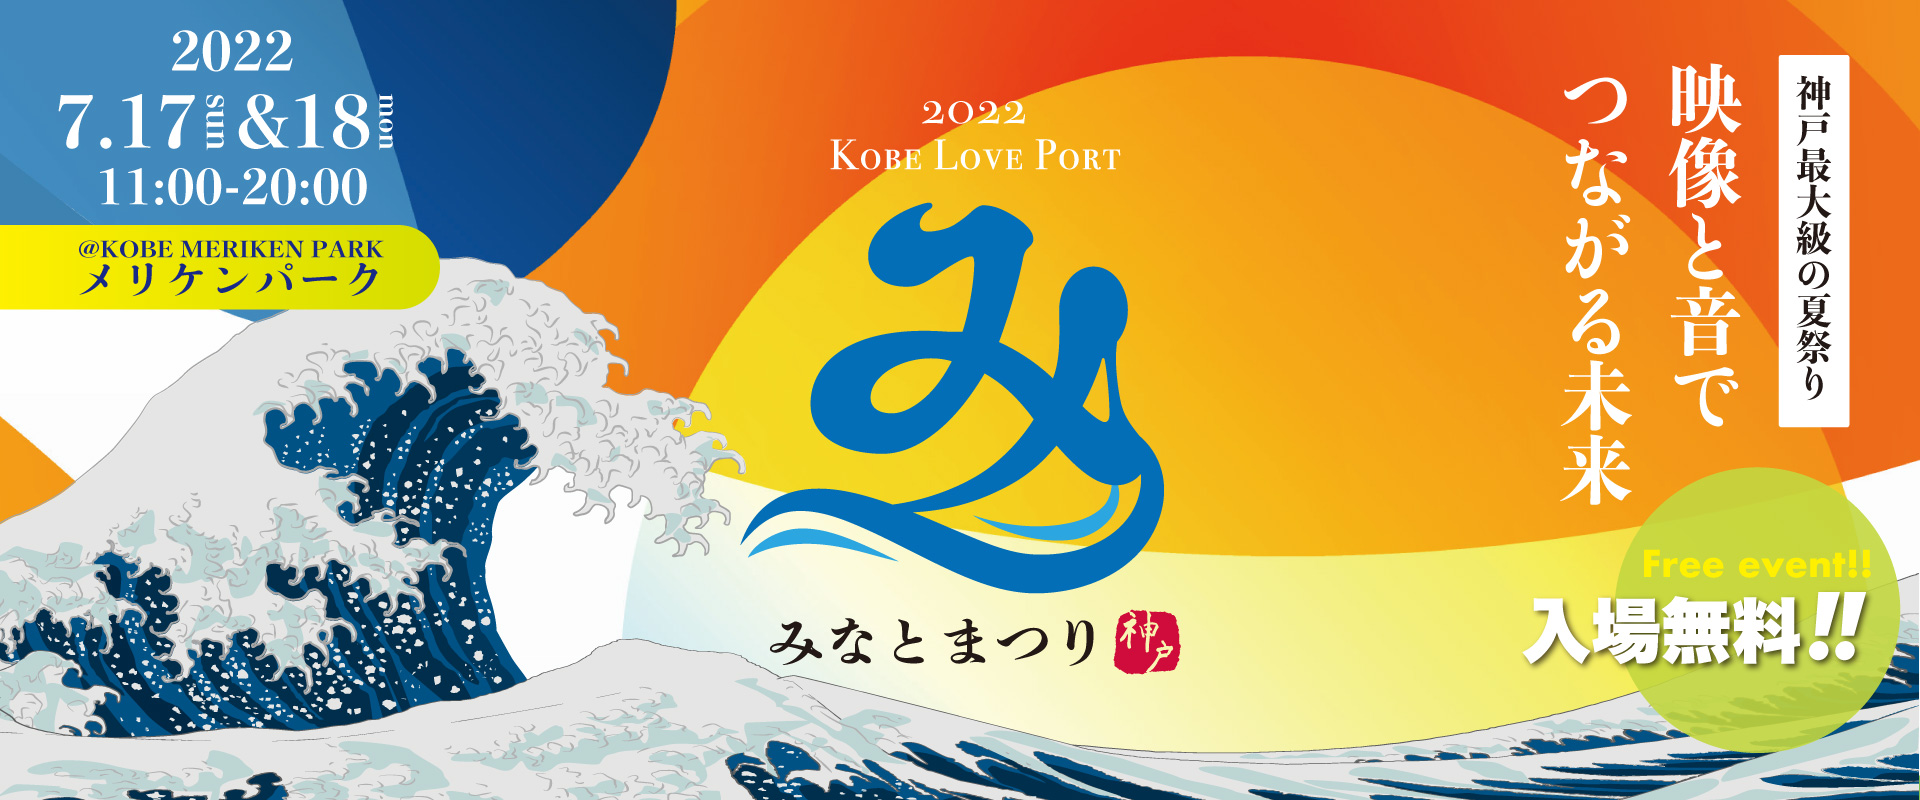 Kobe Love Port みなとまつり 神戸最大級の夏祭り